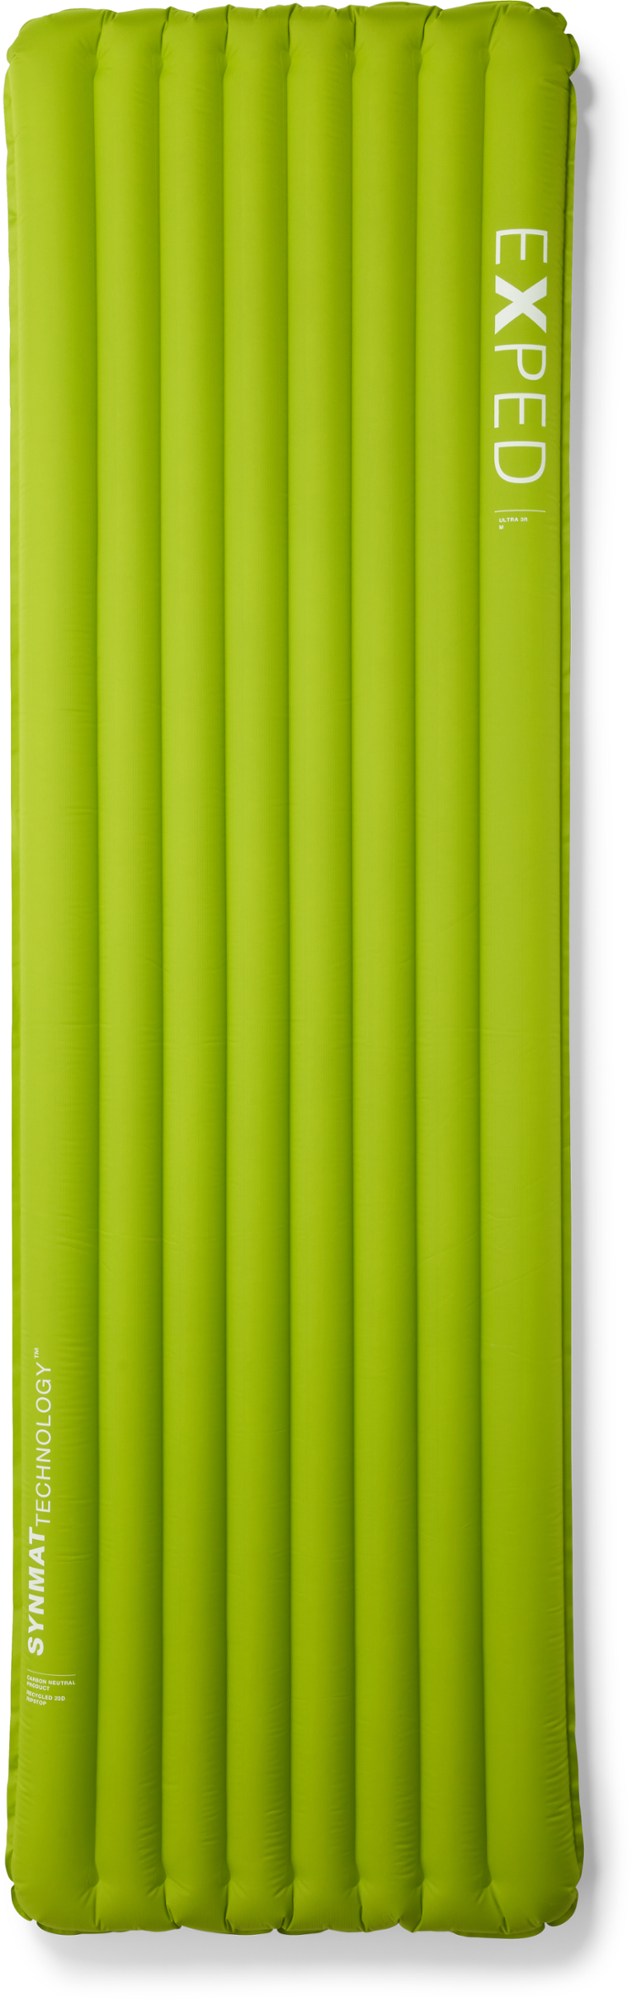 цена Спальный коврик Ультра 3R Exped, зеленый